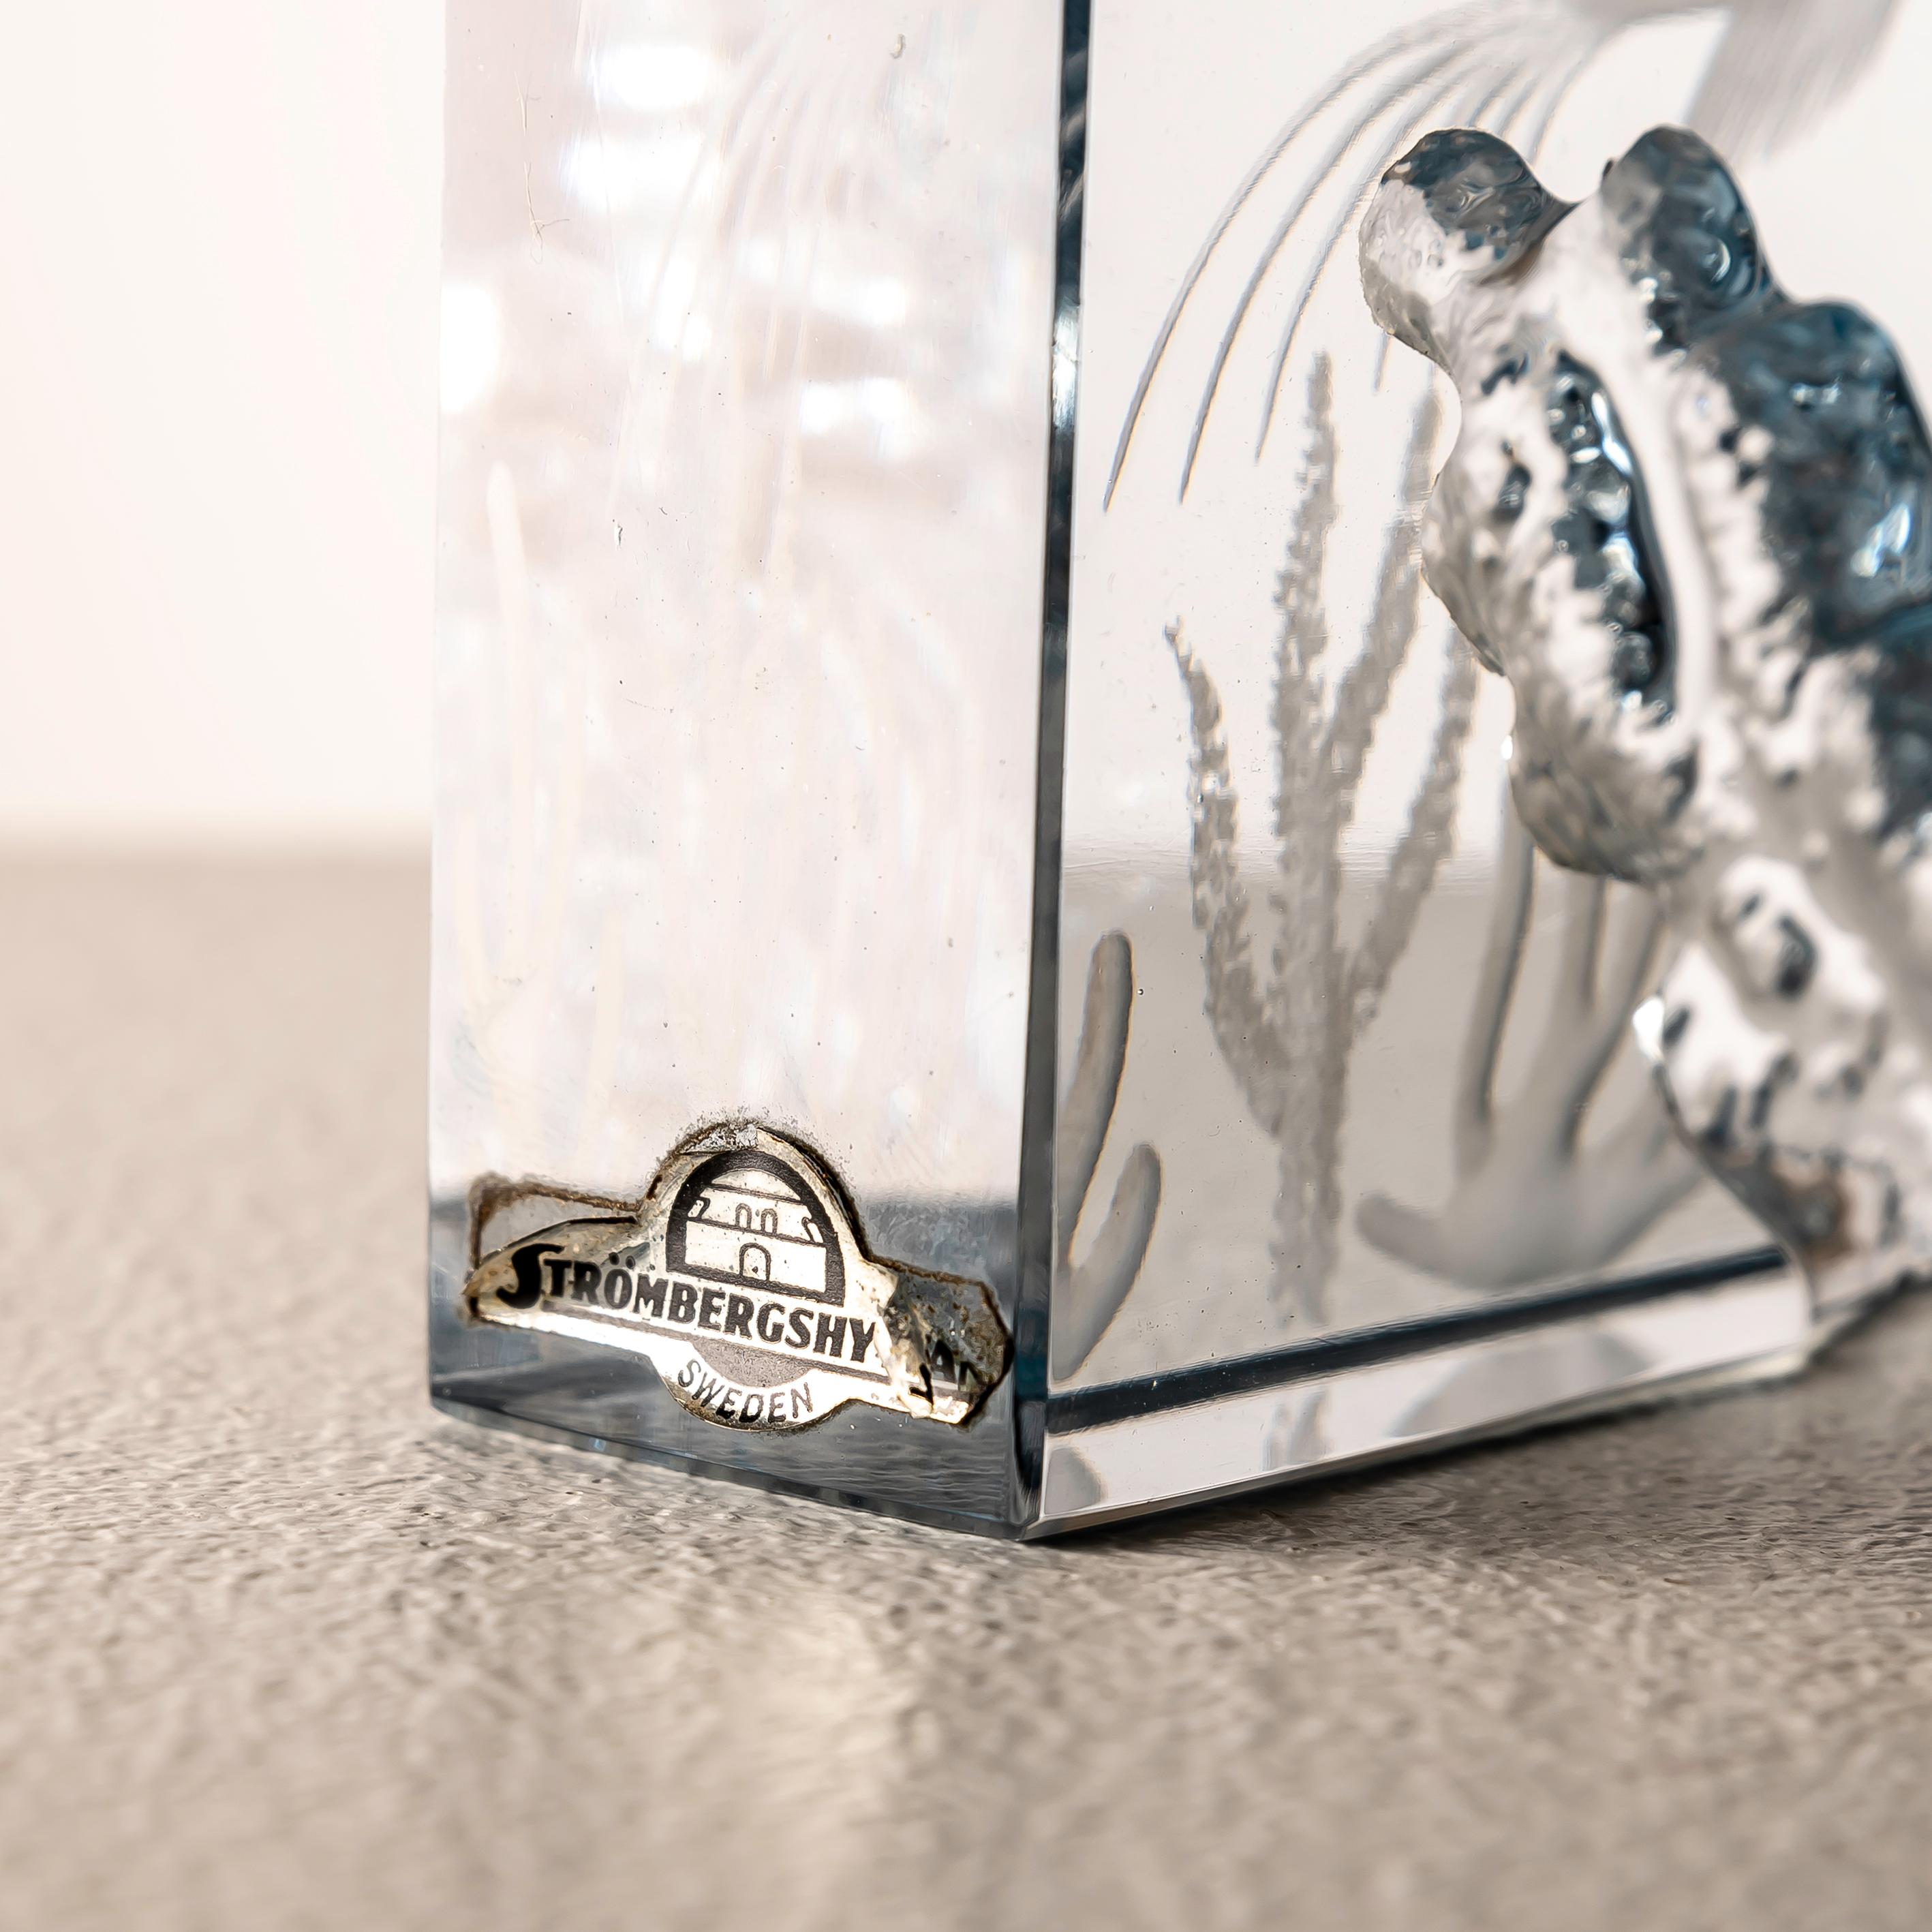 Diese in den 1950er Jahren geätzte Marineszene aus klarem Kunstglas von Strömbergshyttan bietet einen fesselnden Einblick in die Schönheit der Natur, eingefangen in Glas. Strömbergshyttan, bekannt für seine außergewöhnlichen Glasarbeiten,